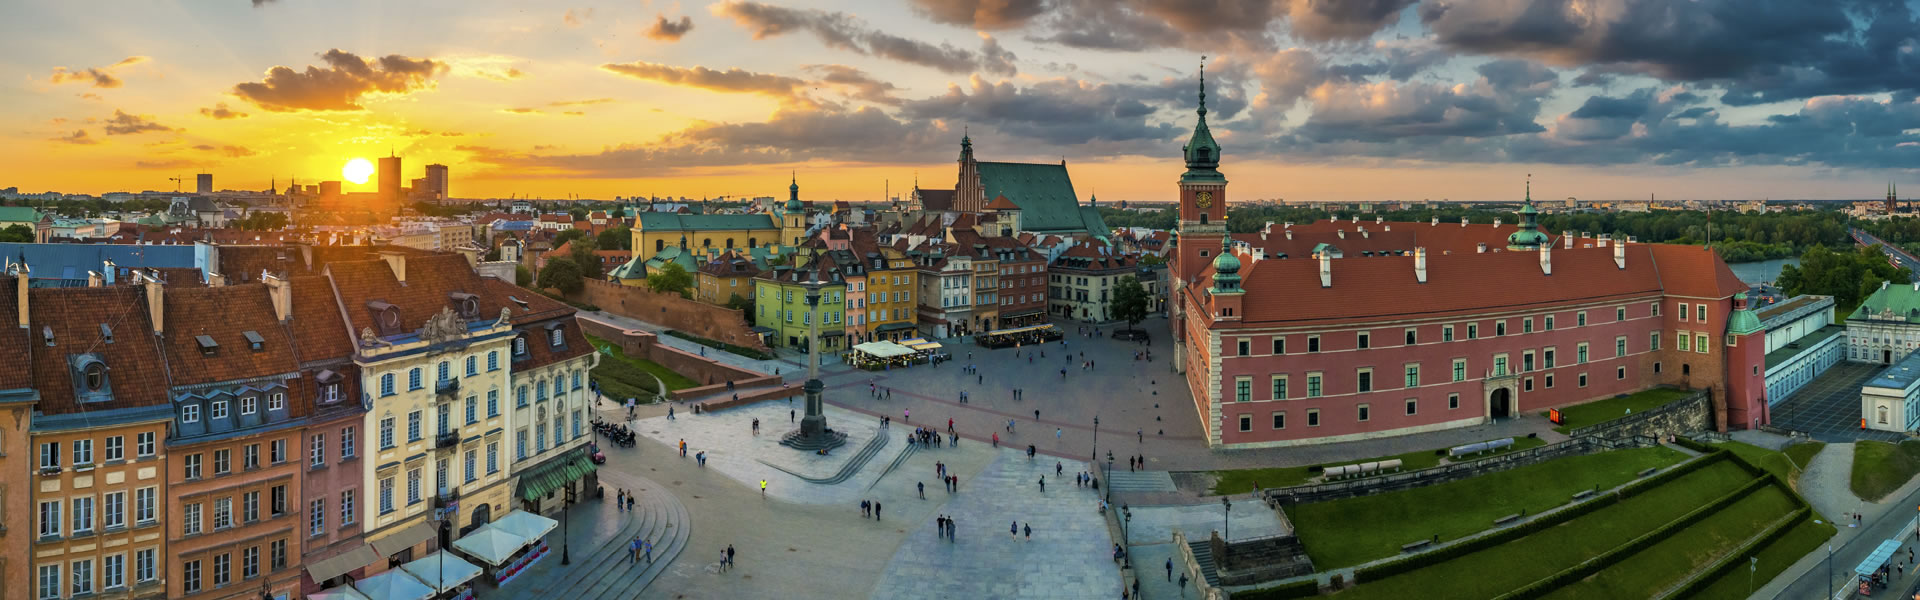 Städtereisen & Kurztrips nach Osteuropa - erleben Sie Prag, Breslau, Danzig, Krakau & weitere Städtetrips!